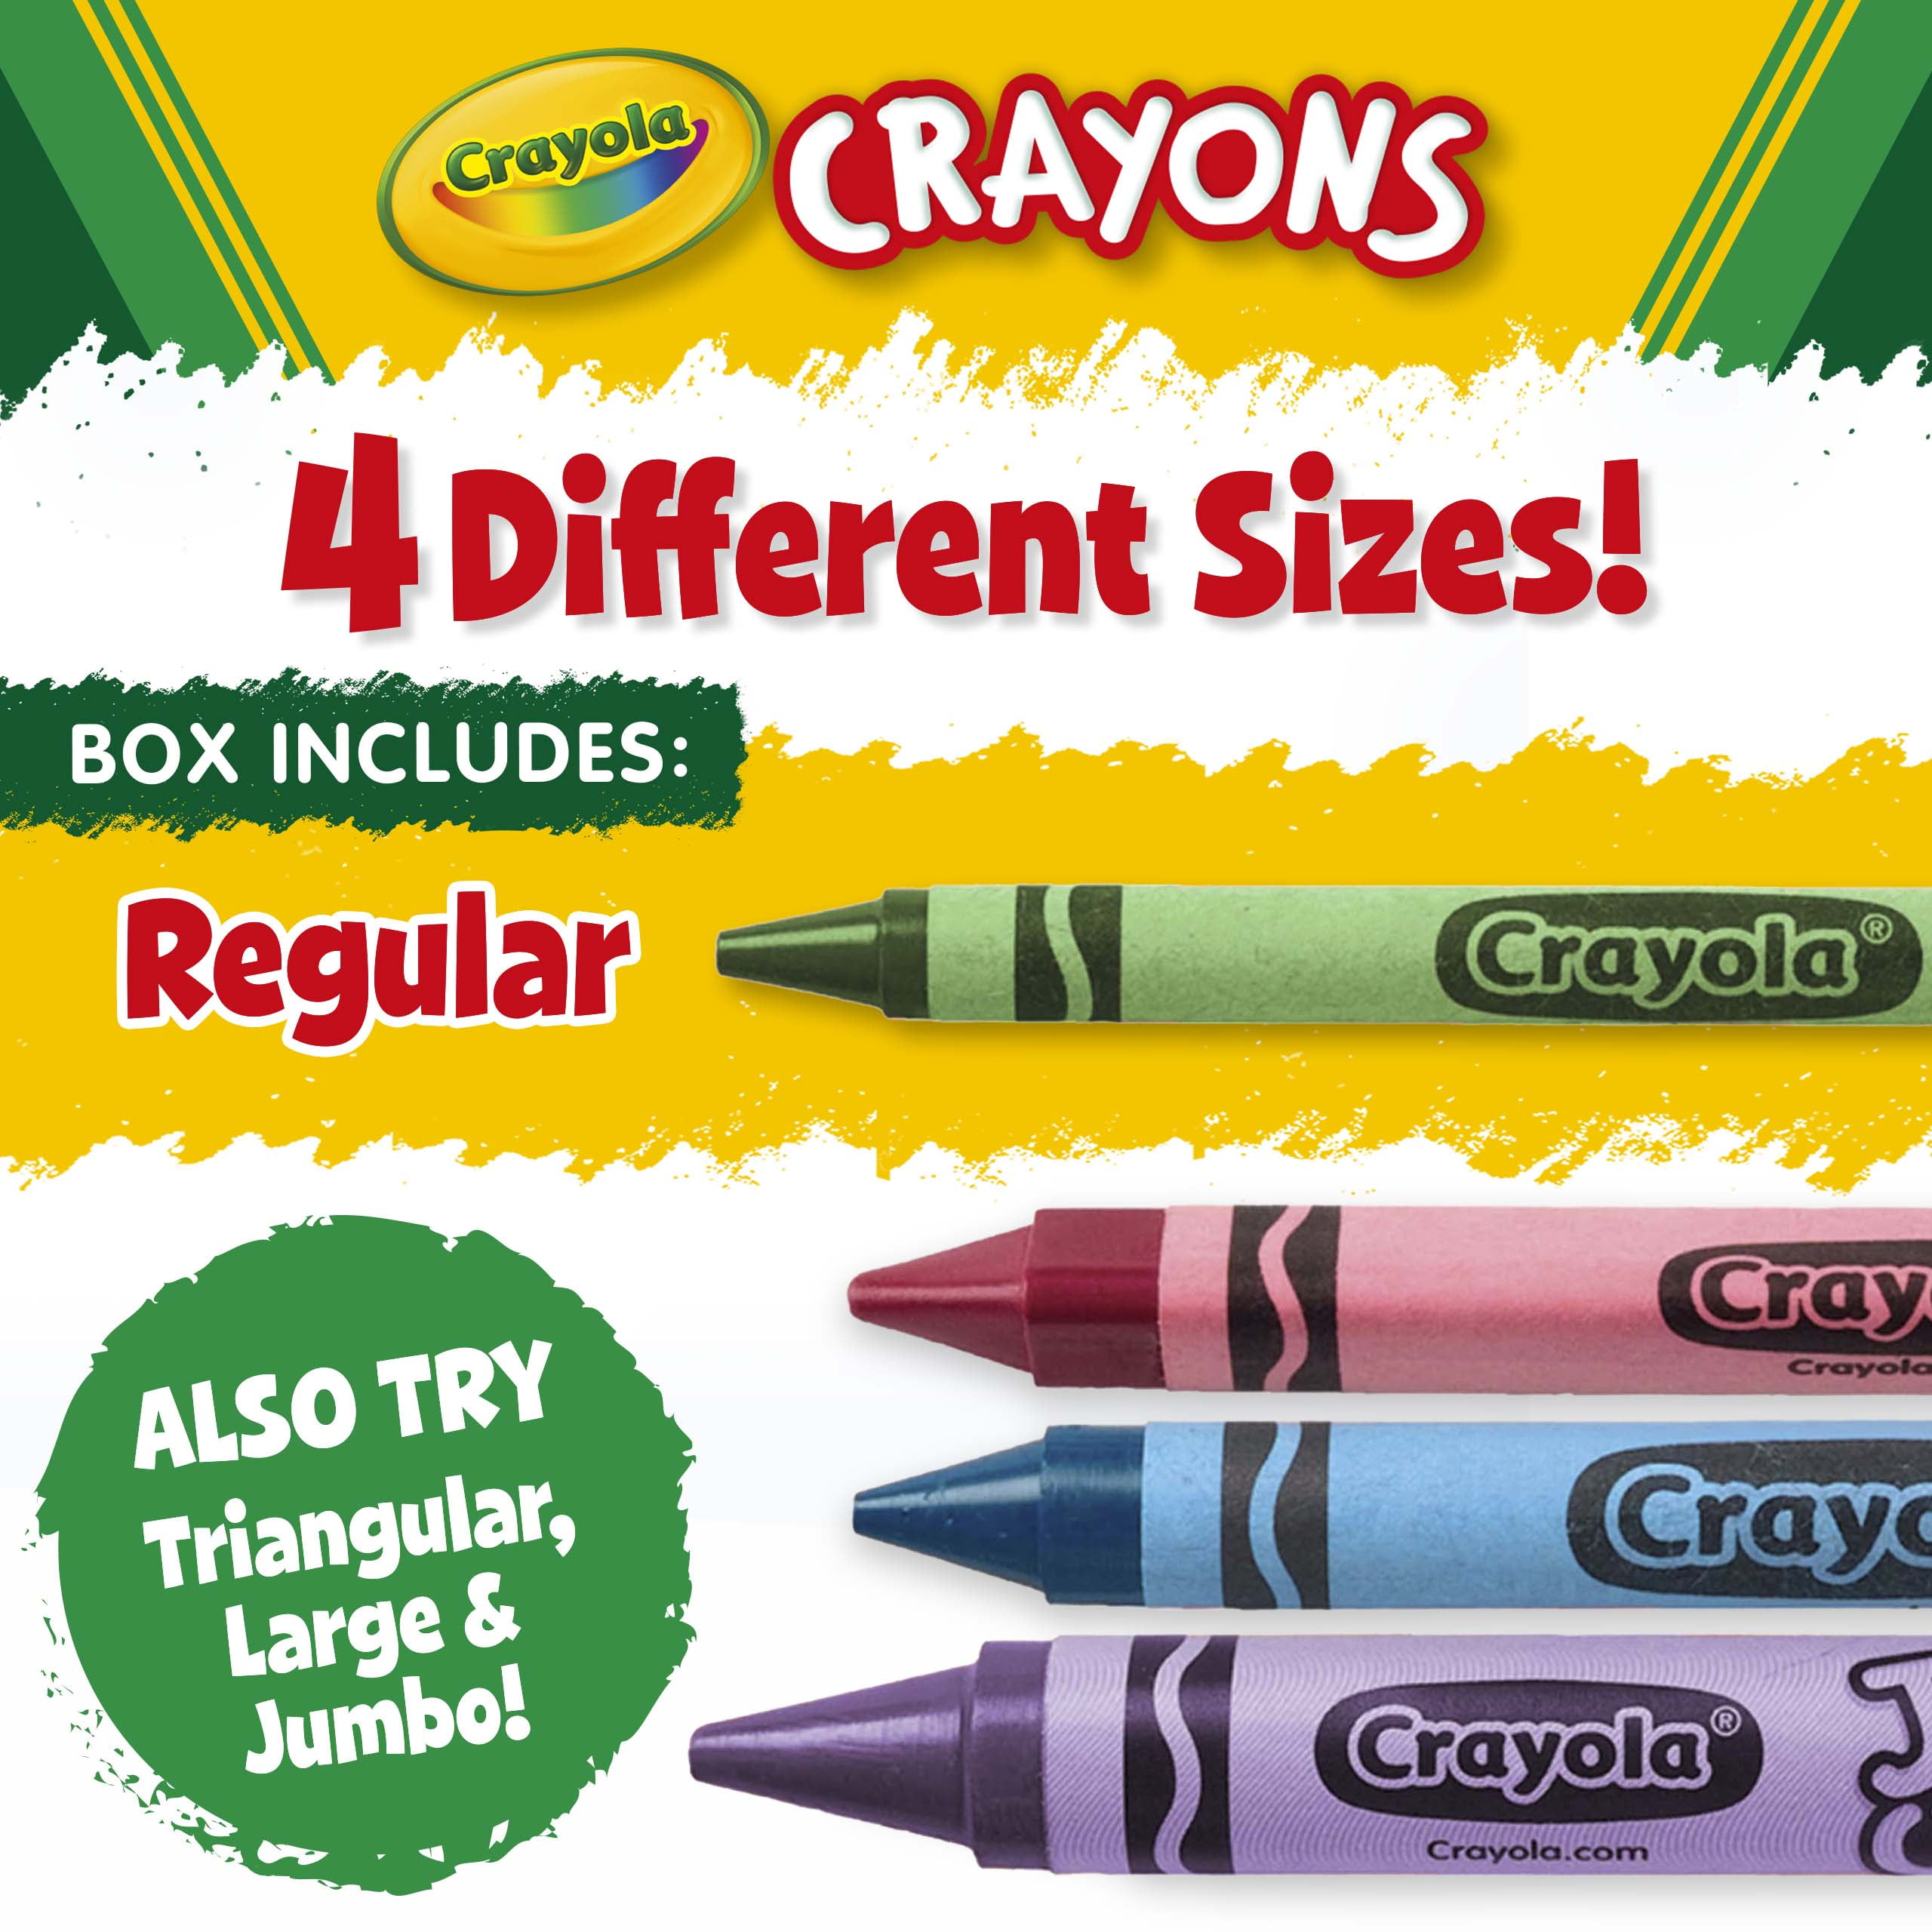 Triangular Crayons - 24 pack 4136